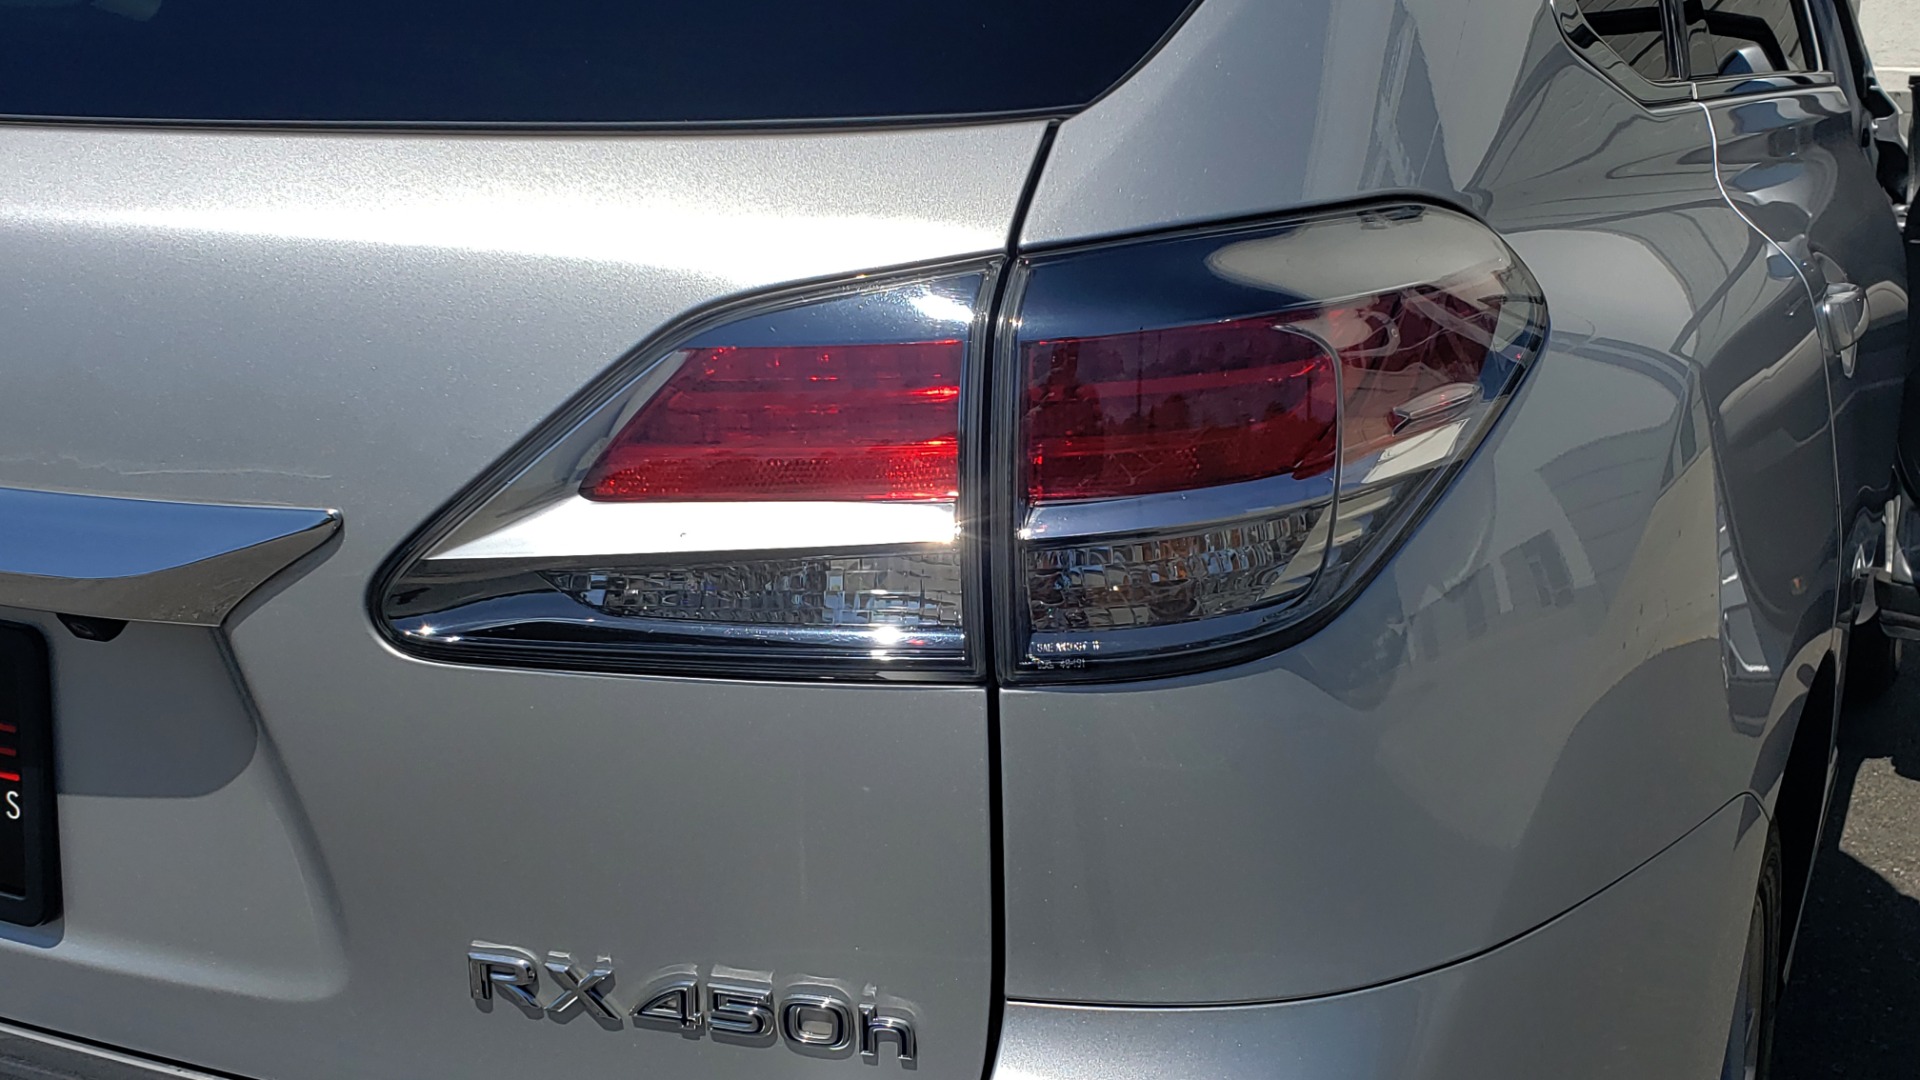 Used 2015 Lexus RX 450H AWD / PREM PKG / NAV / PARK ASST / HUD / BLIND SPOT MONITOR for sale Sold at Formula Imports in Charlotte NC 28227 29